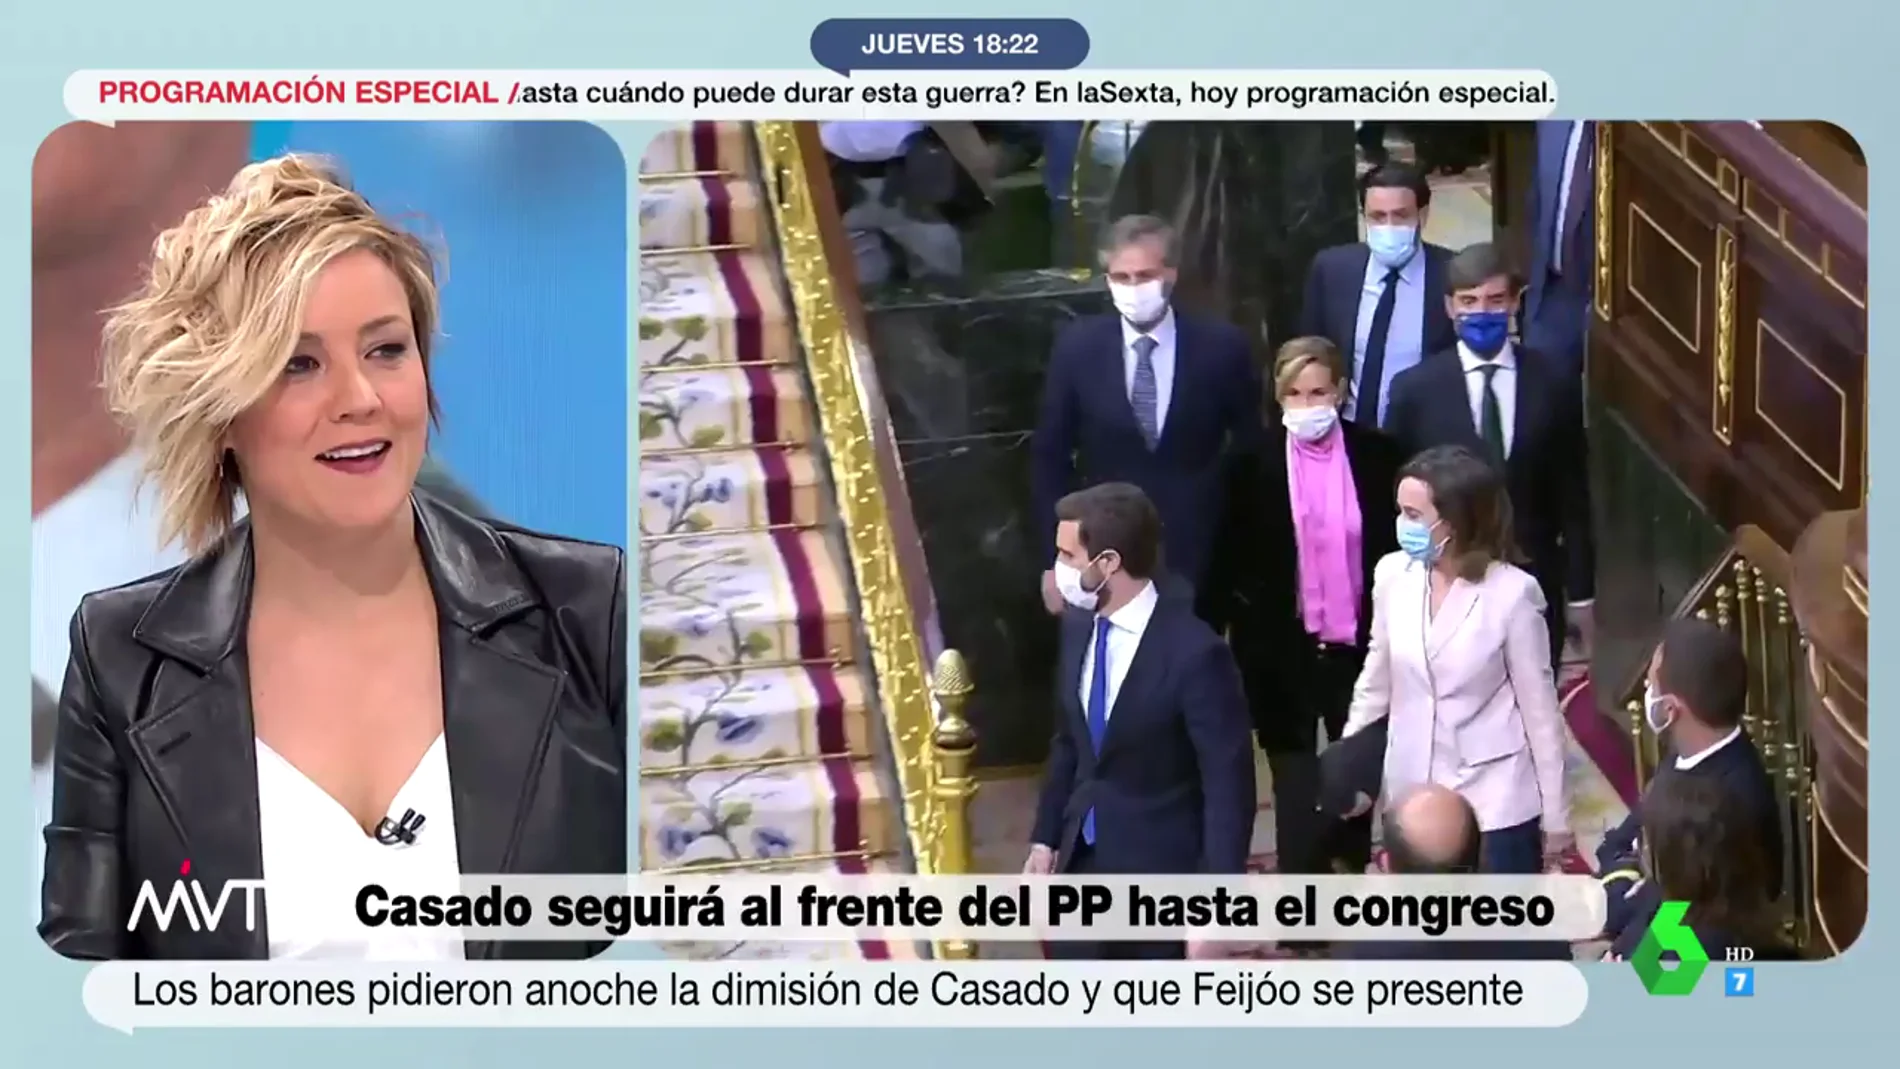 La reflexión de Antonio Maestre sobre la crisis del PP que sorprende a Cristina Pardo: "¿No te estarás cayendo del guindo ahora?"